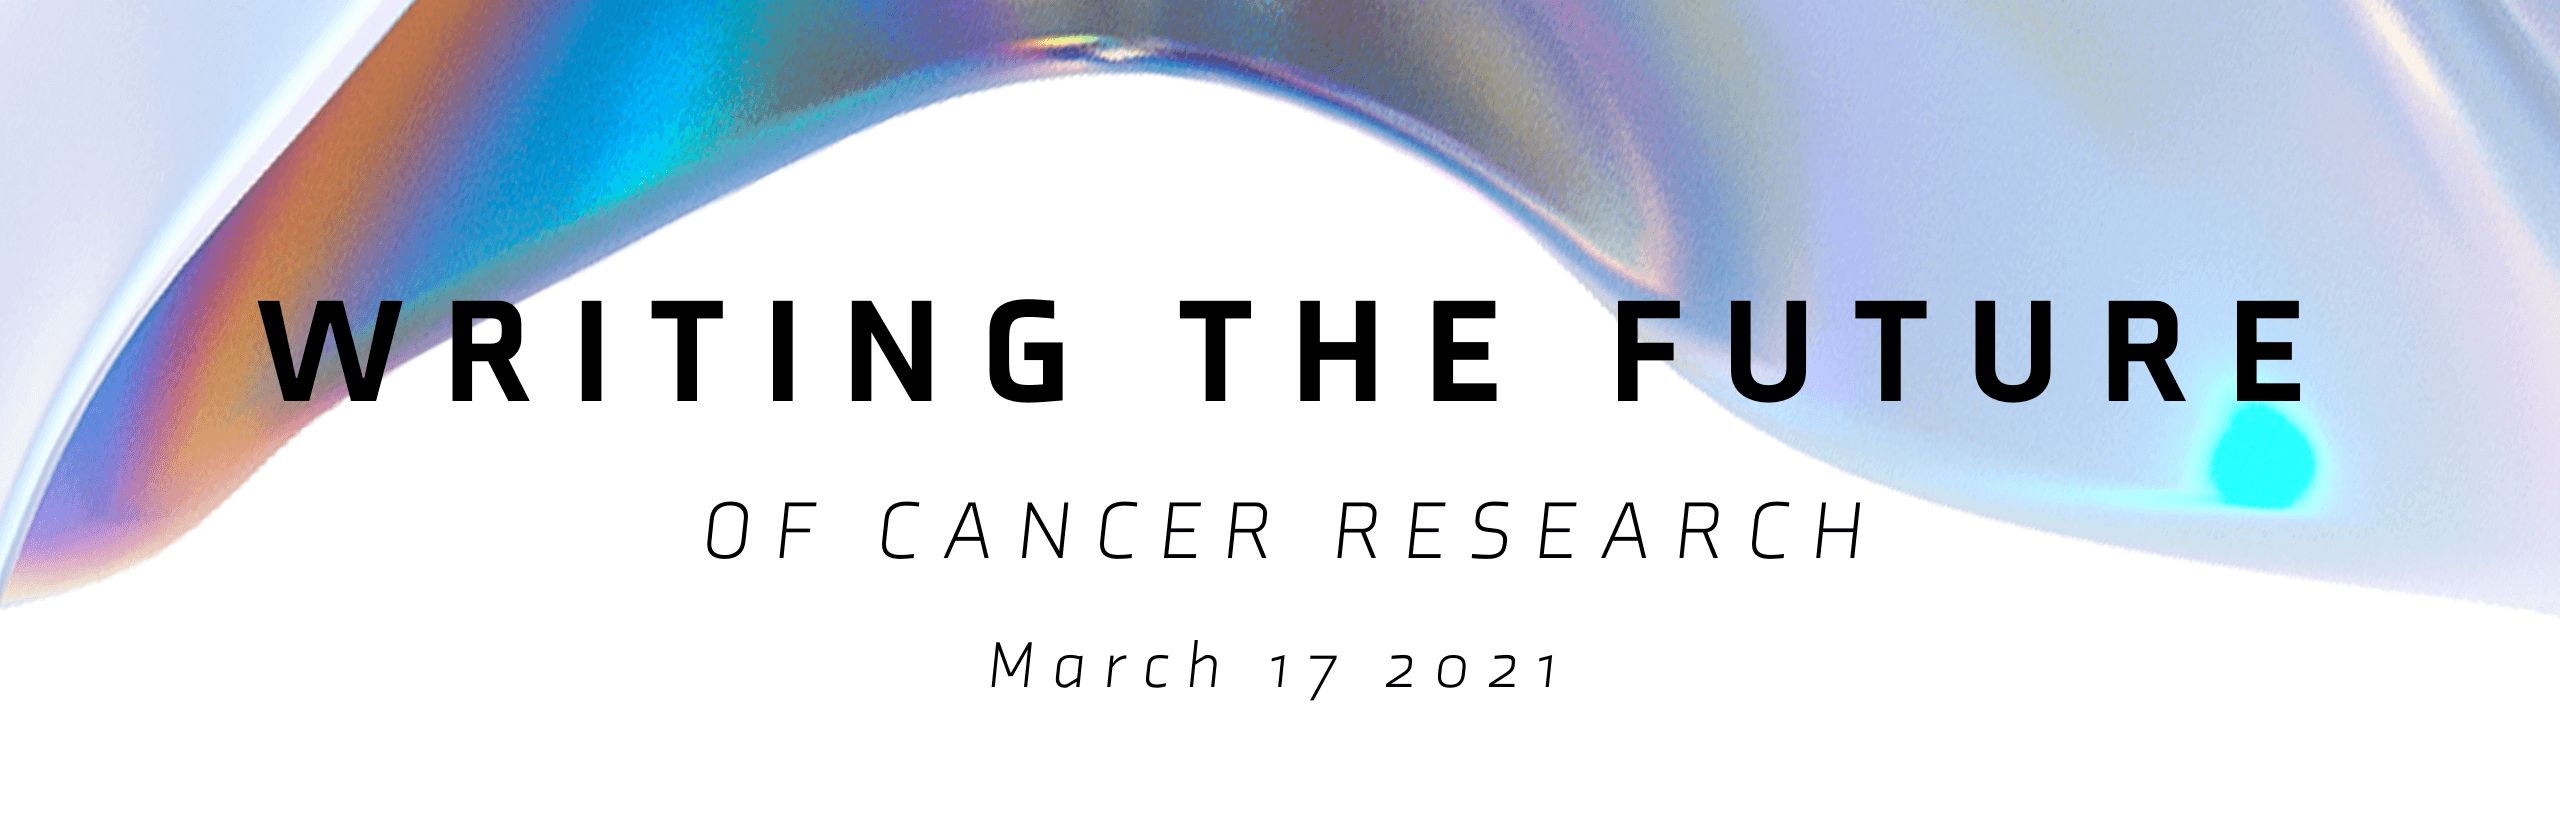 Previsualización del simposio en directo: Escribimos el futuro de la investigación contra el cáncer